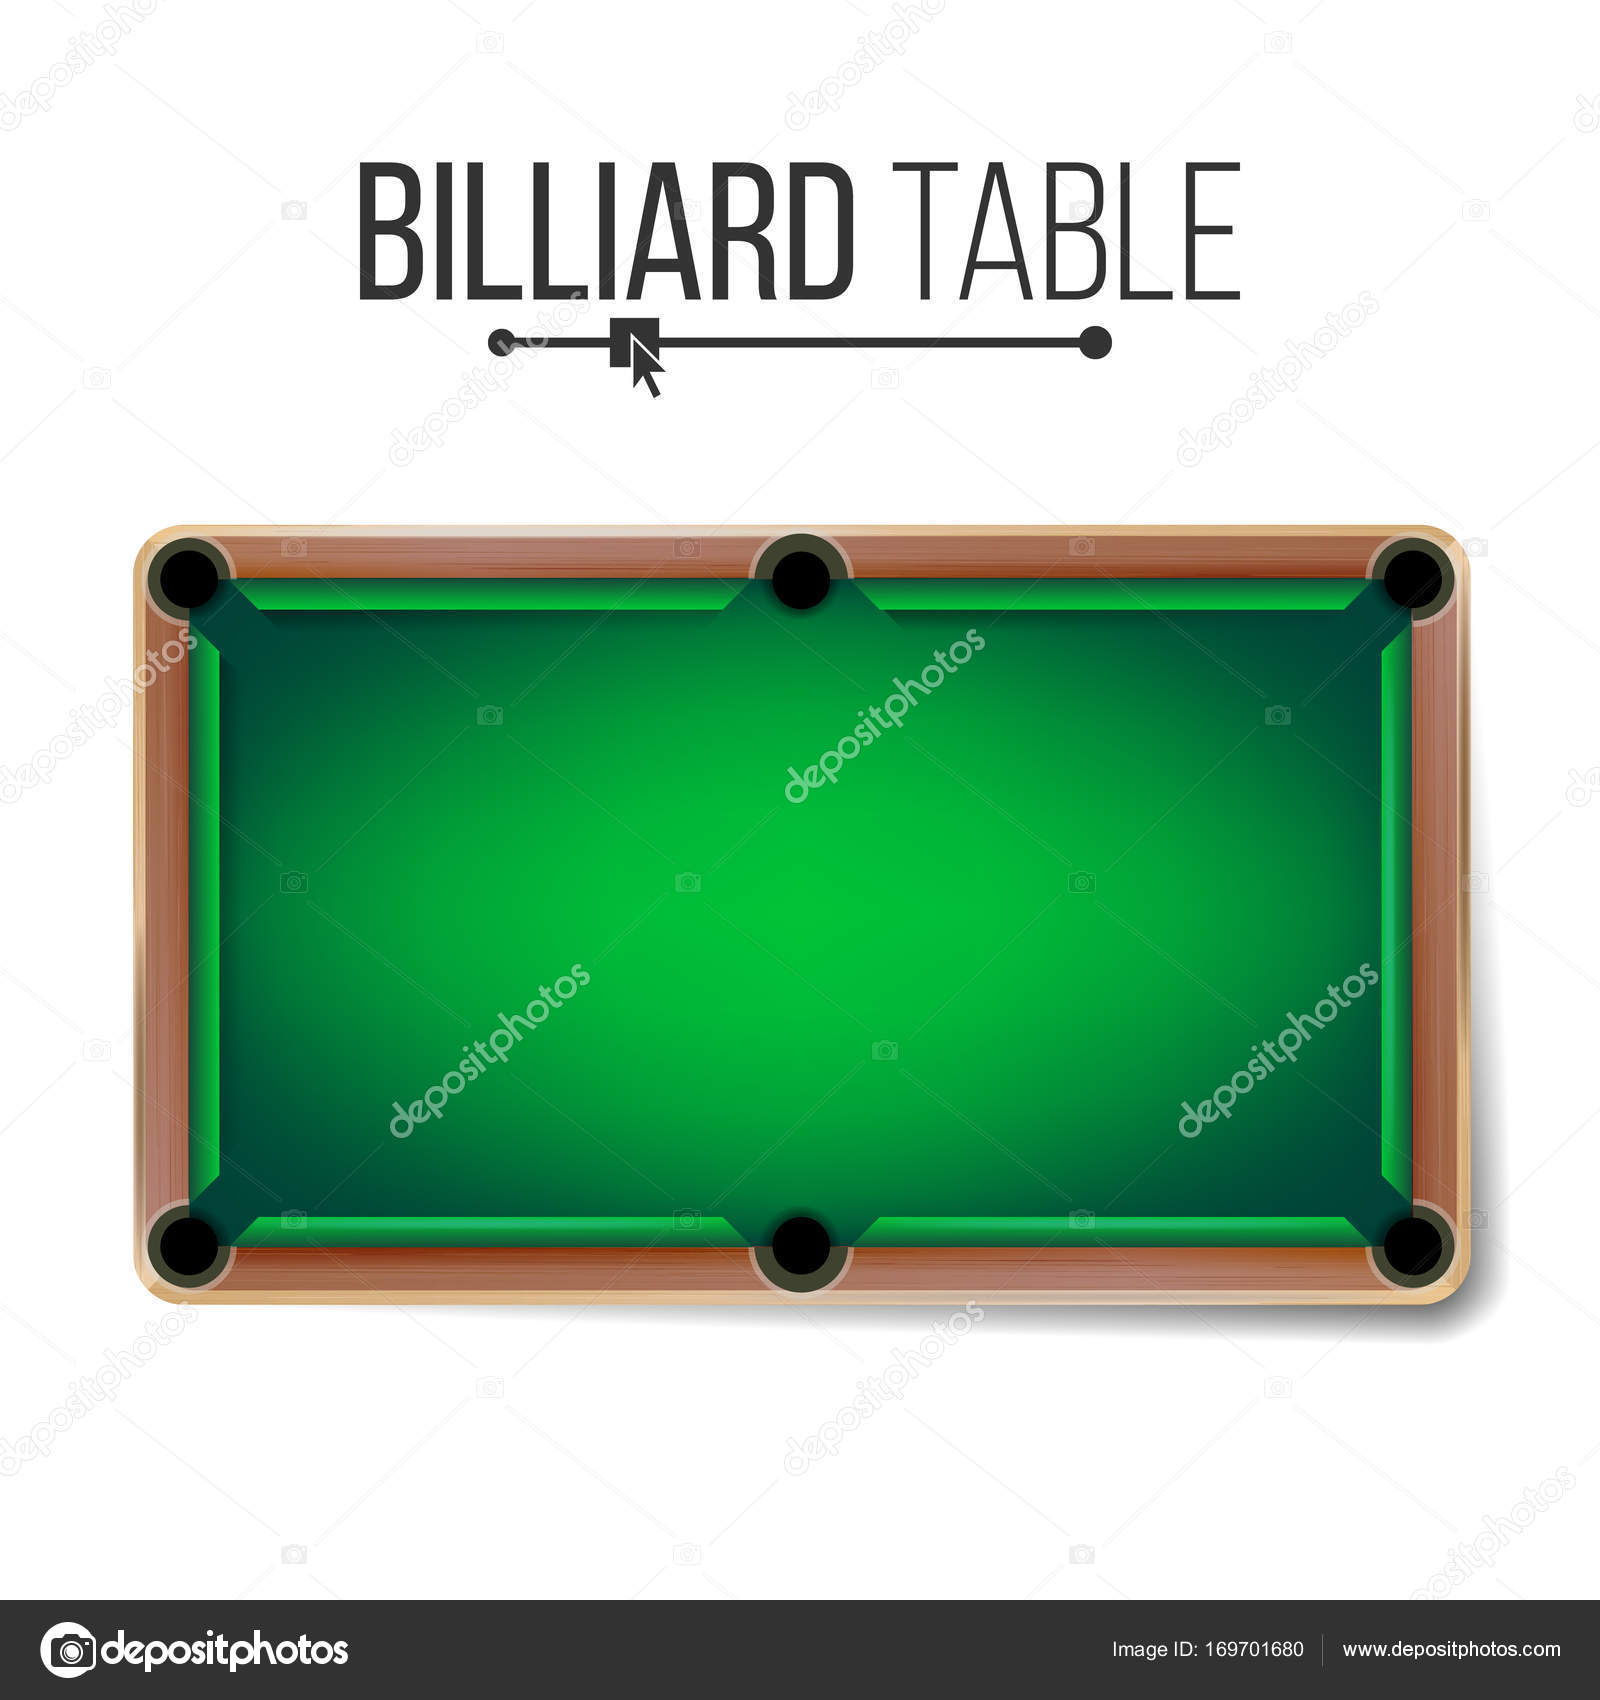 Plano de fundo do jogo de bilhar com vista superior da mesa de bilhar